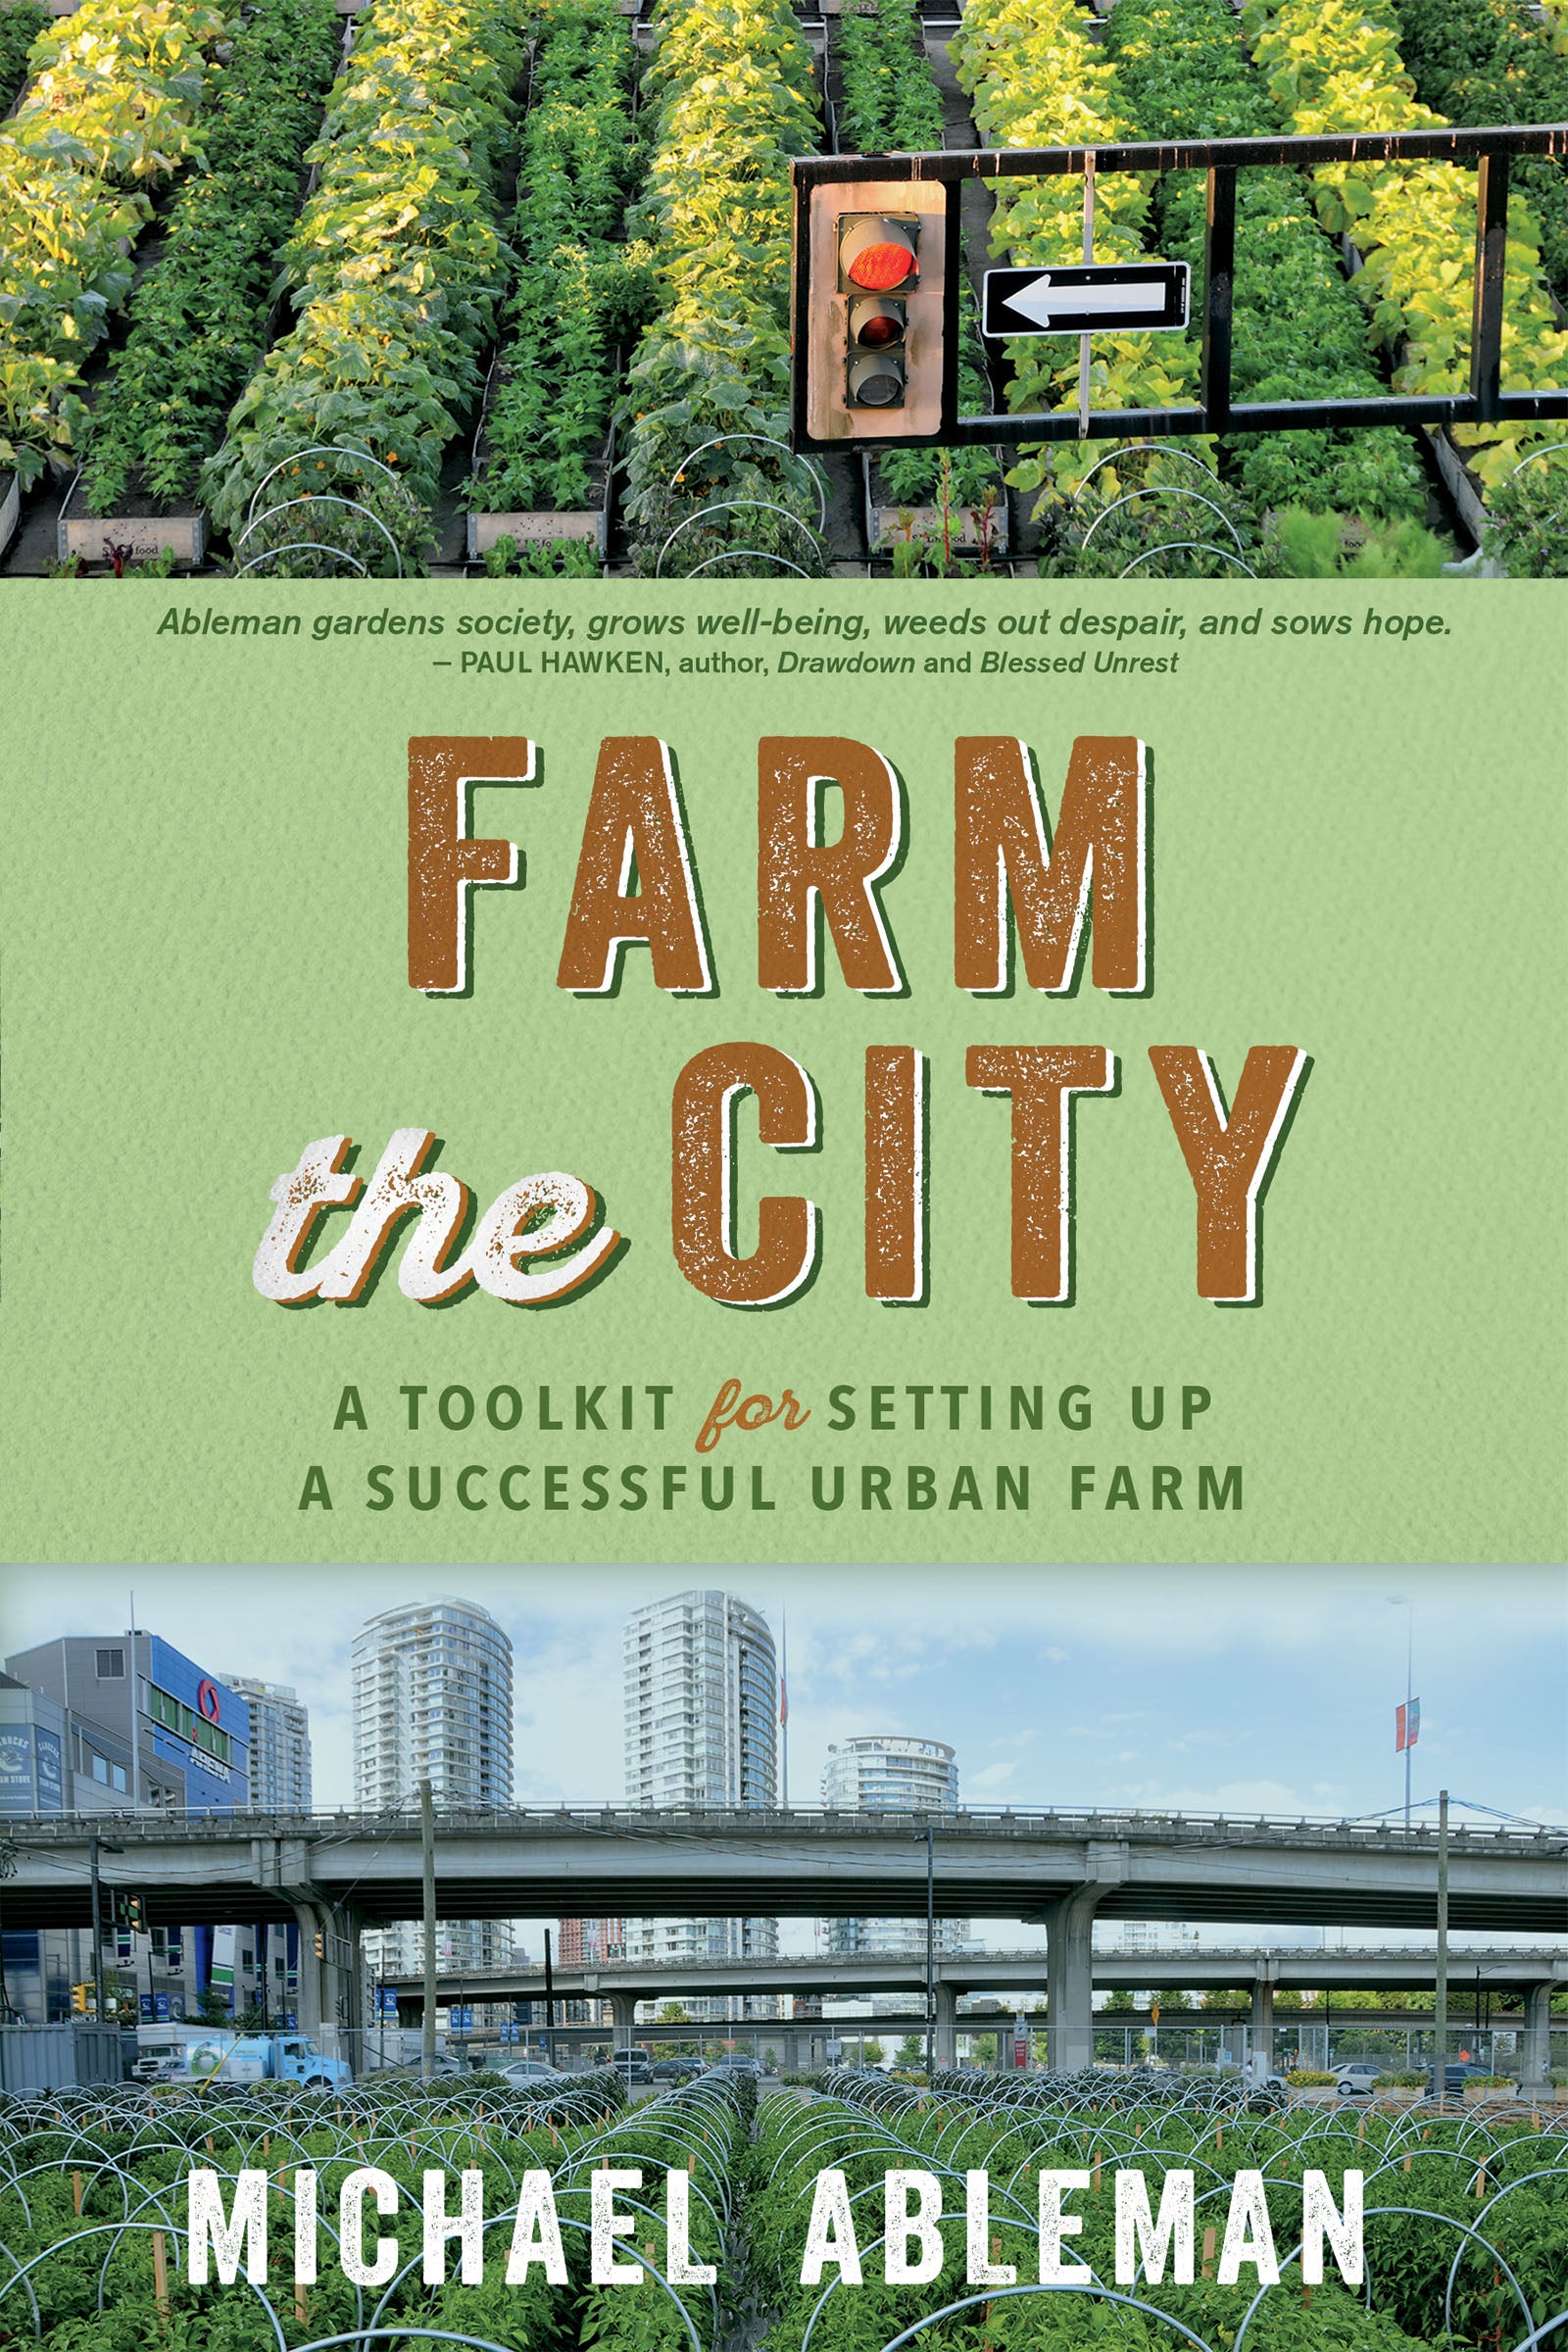 City　Society　The　New　–　Farm　Publishers